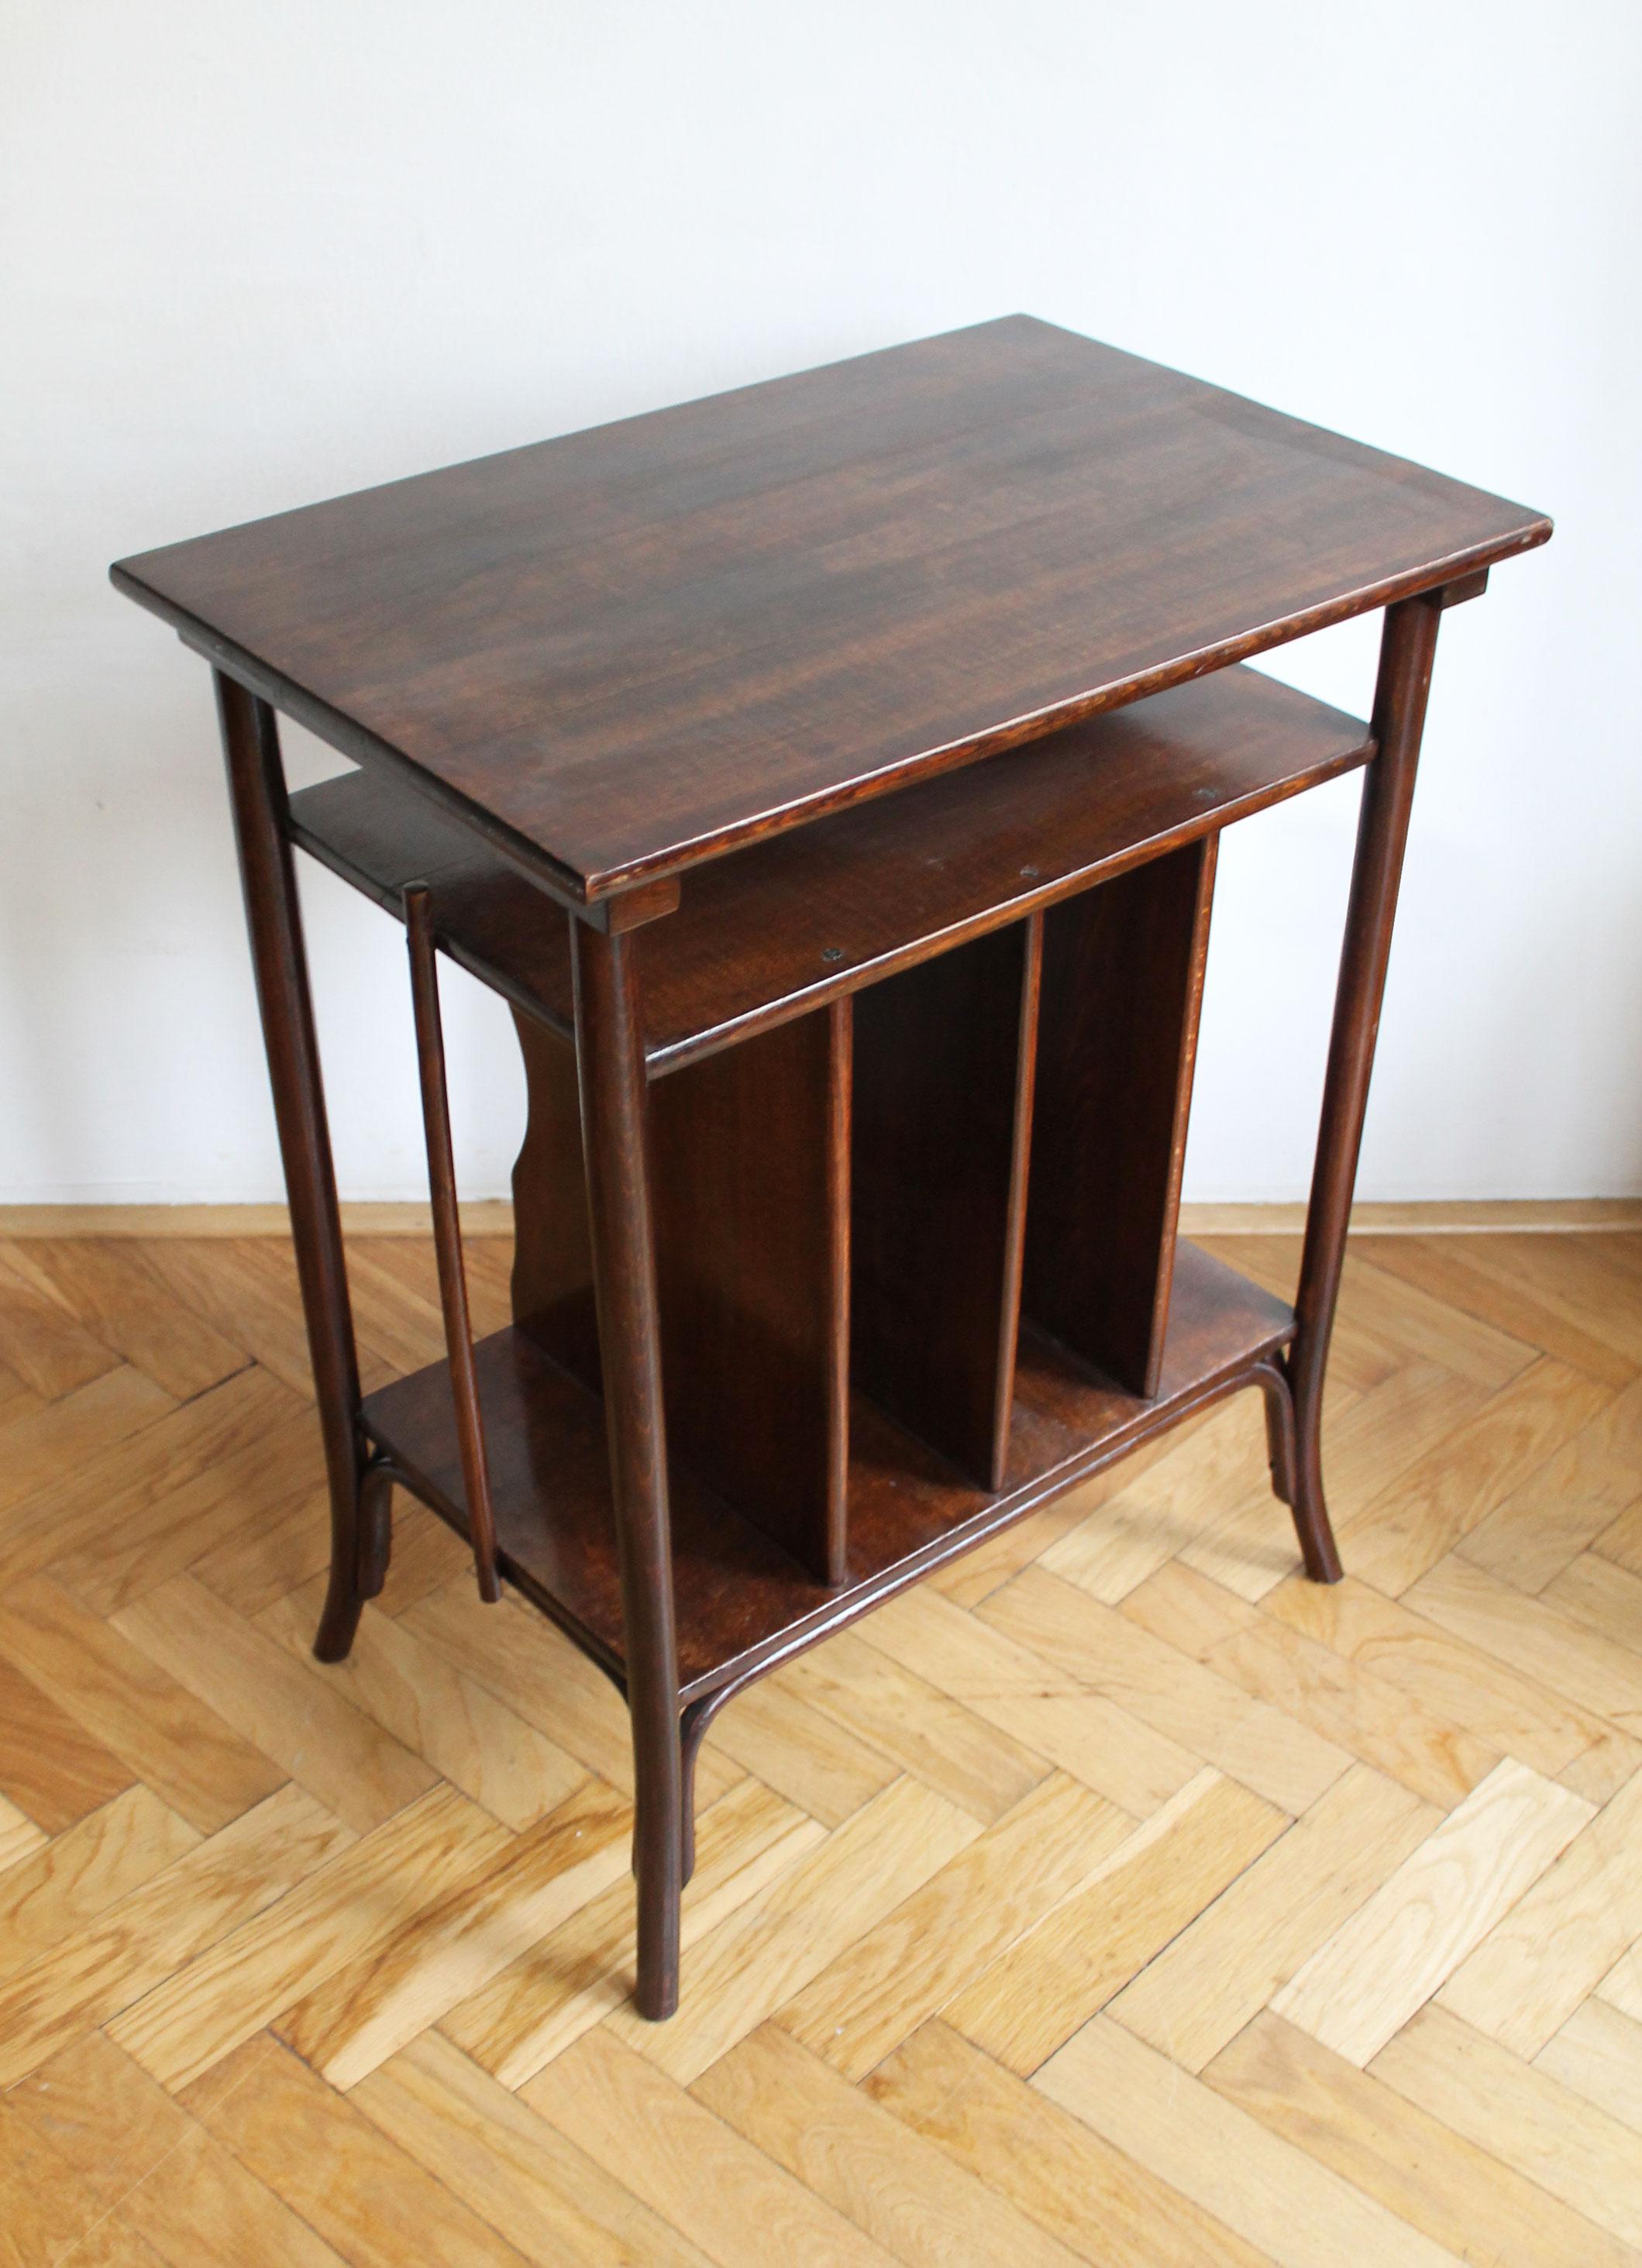 Austrian 1910's Art Nouveau Table by Gebrüder Thonet For Sale